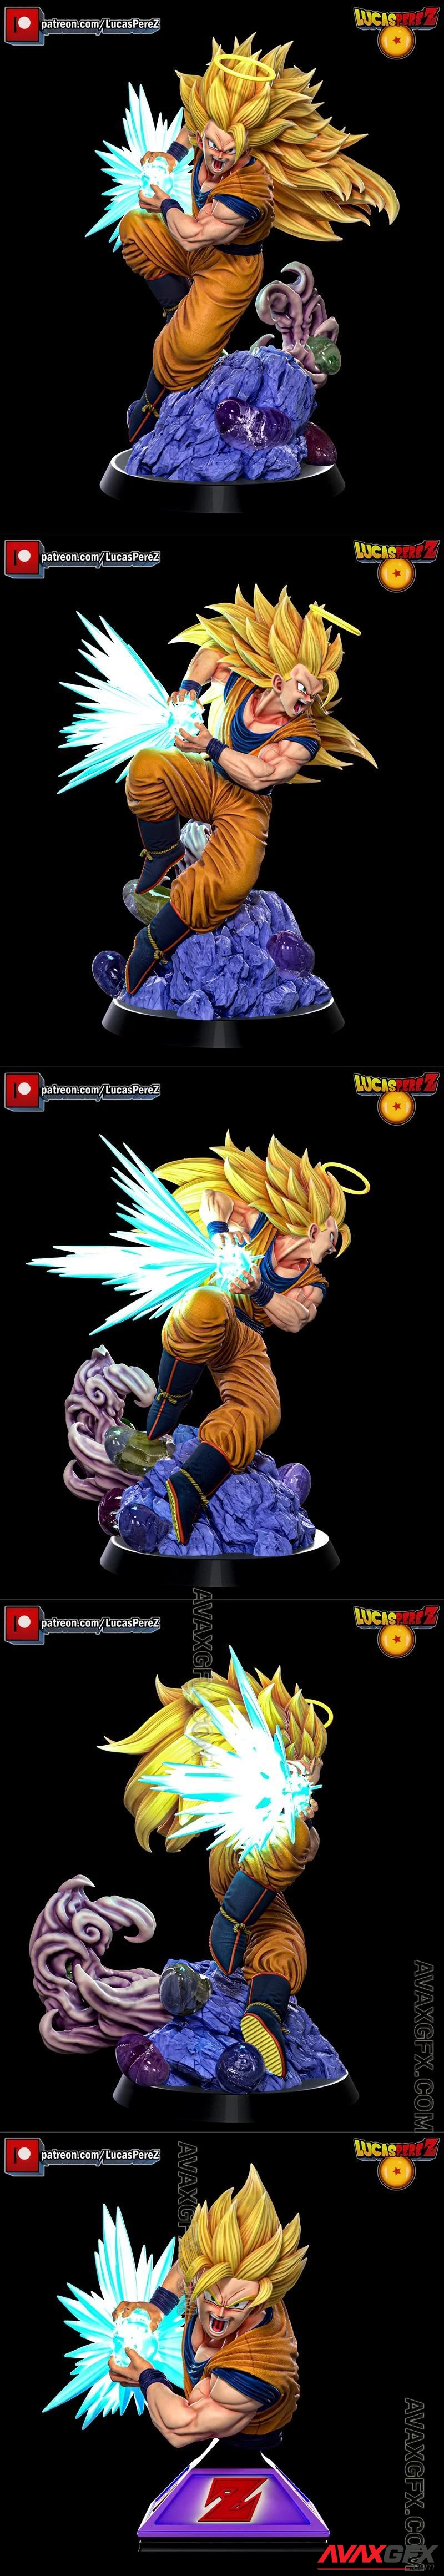 Goku SSJ3 Special by Lucas Perez